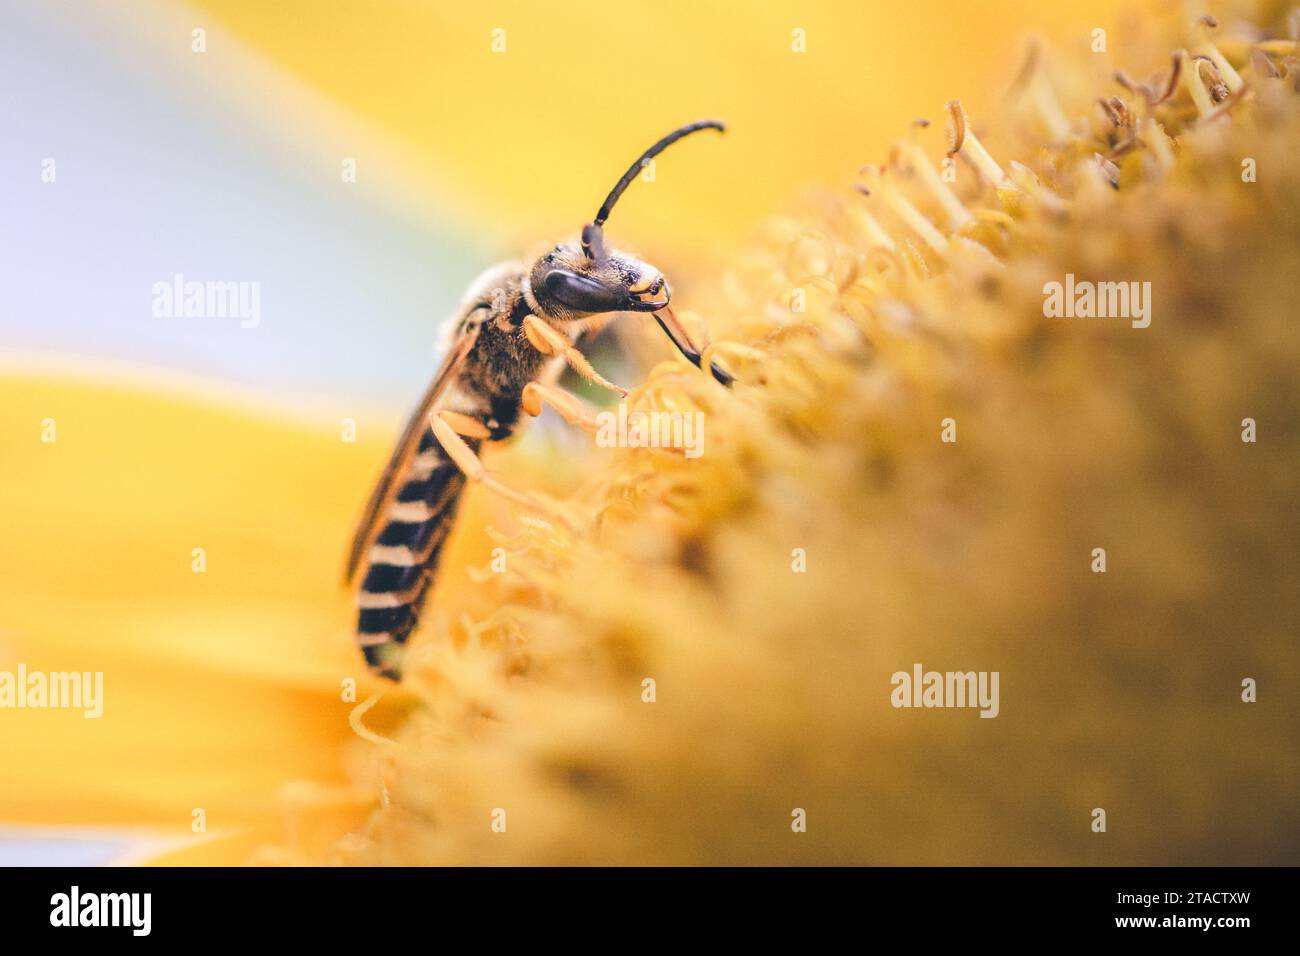 Un momento magico immortalato: Un'ape selvatica succhia nettare da un girasole, creando una festa floreale festosa di nutrizione e bellezza. Foto Stock